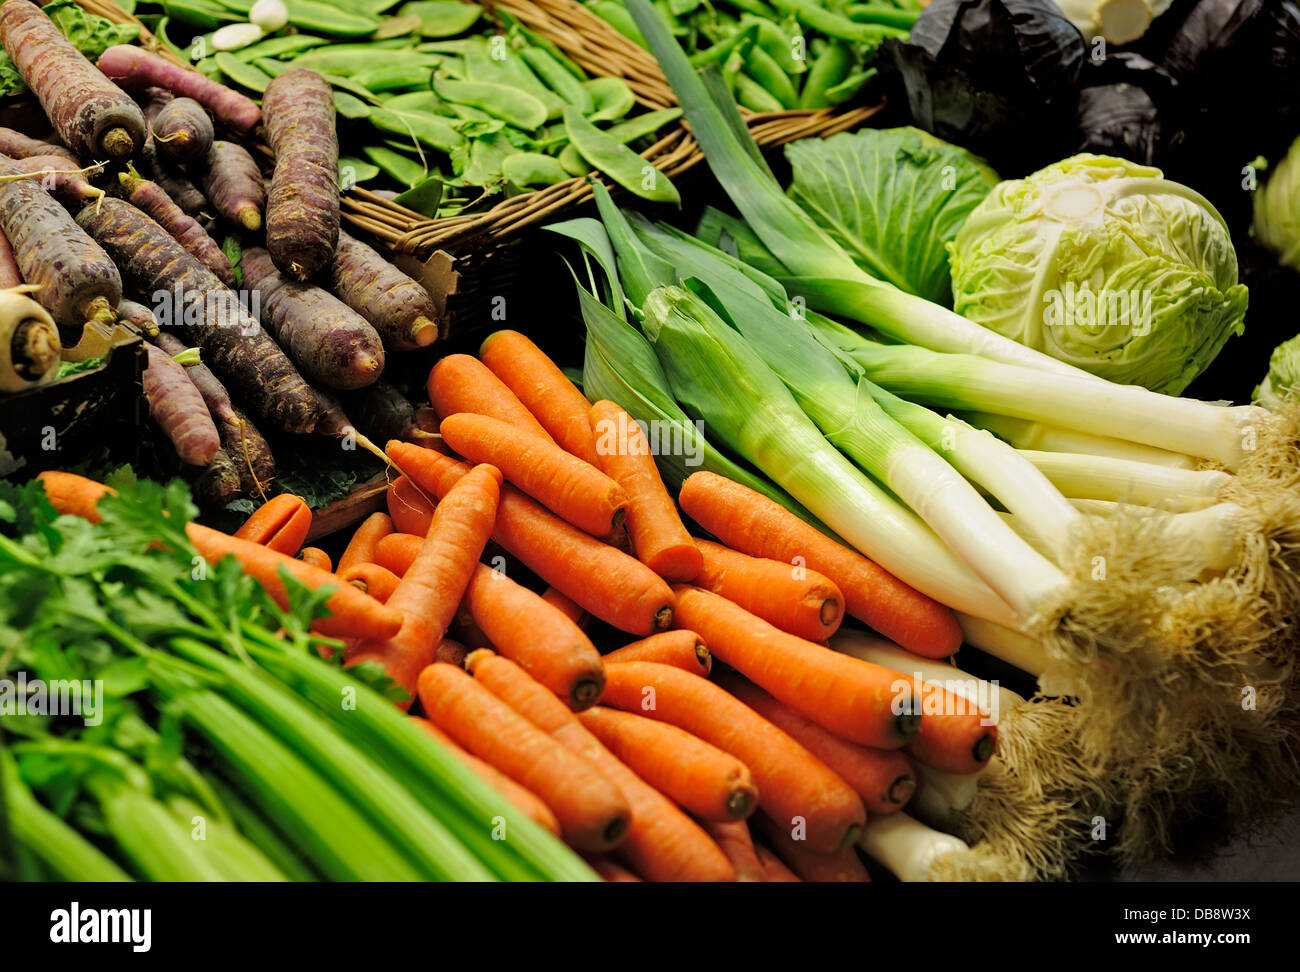 Légumes frais sur une échoppe de marché , POIS CAROTTES POIREAUX Céleri Chou Banque D'Images